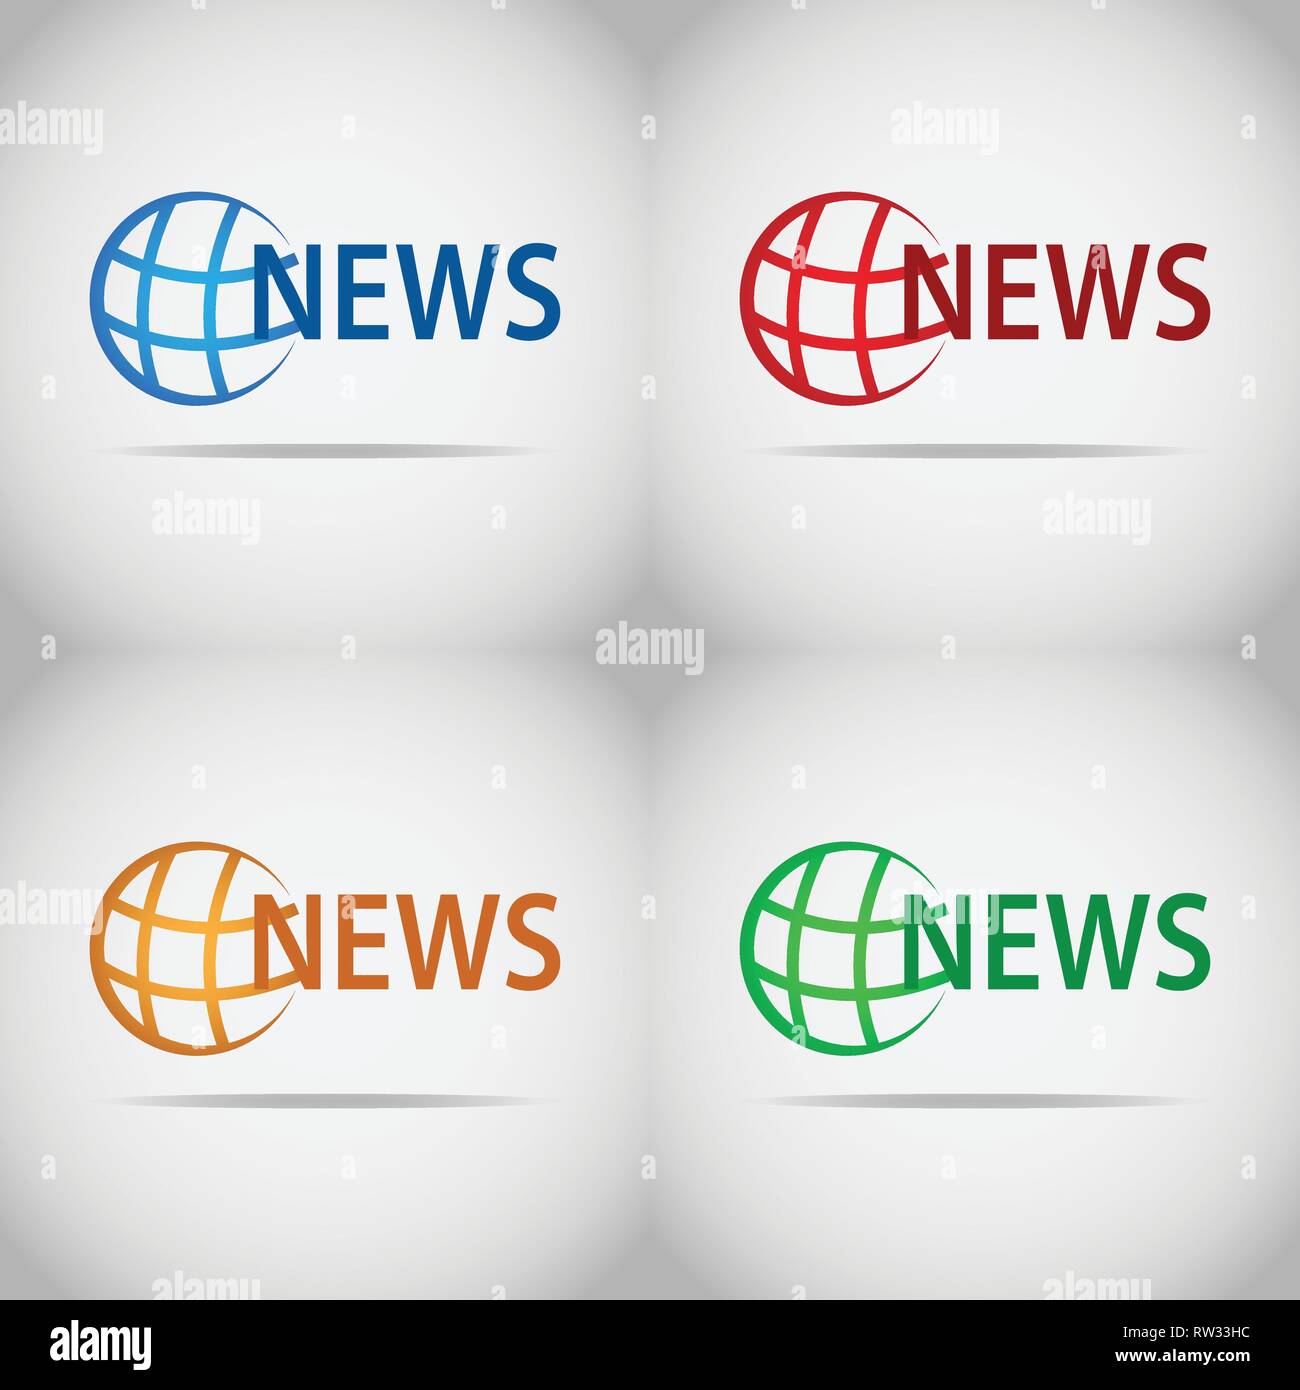 Dieses Logo hat ein Bild von der Erde und es ist ein Nachrichten Artikel. Dieses Logo ist gut für die Nutzung durch ein Unternehmen in den Medien engagiert. Stock Vektor